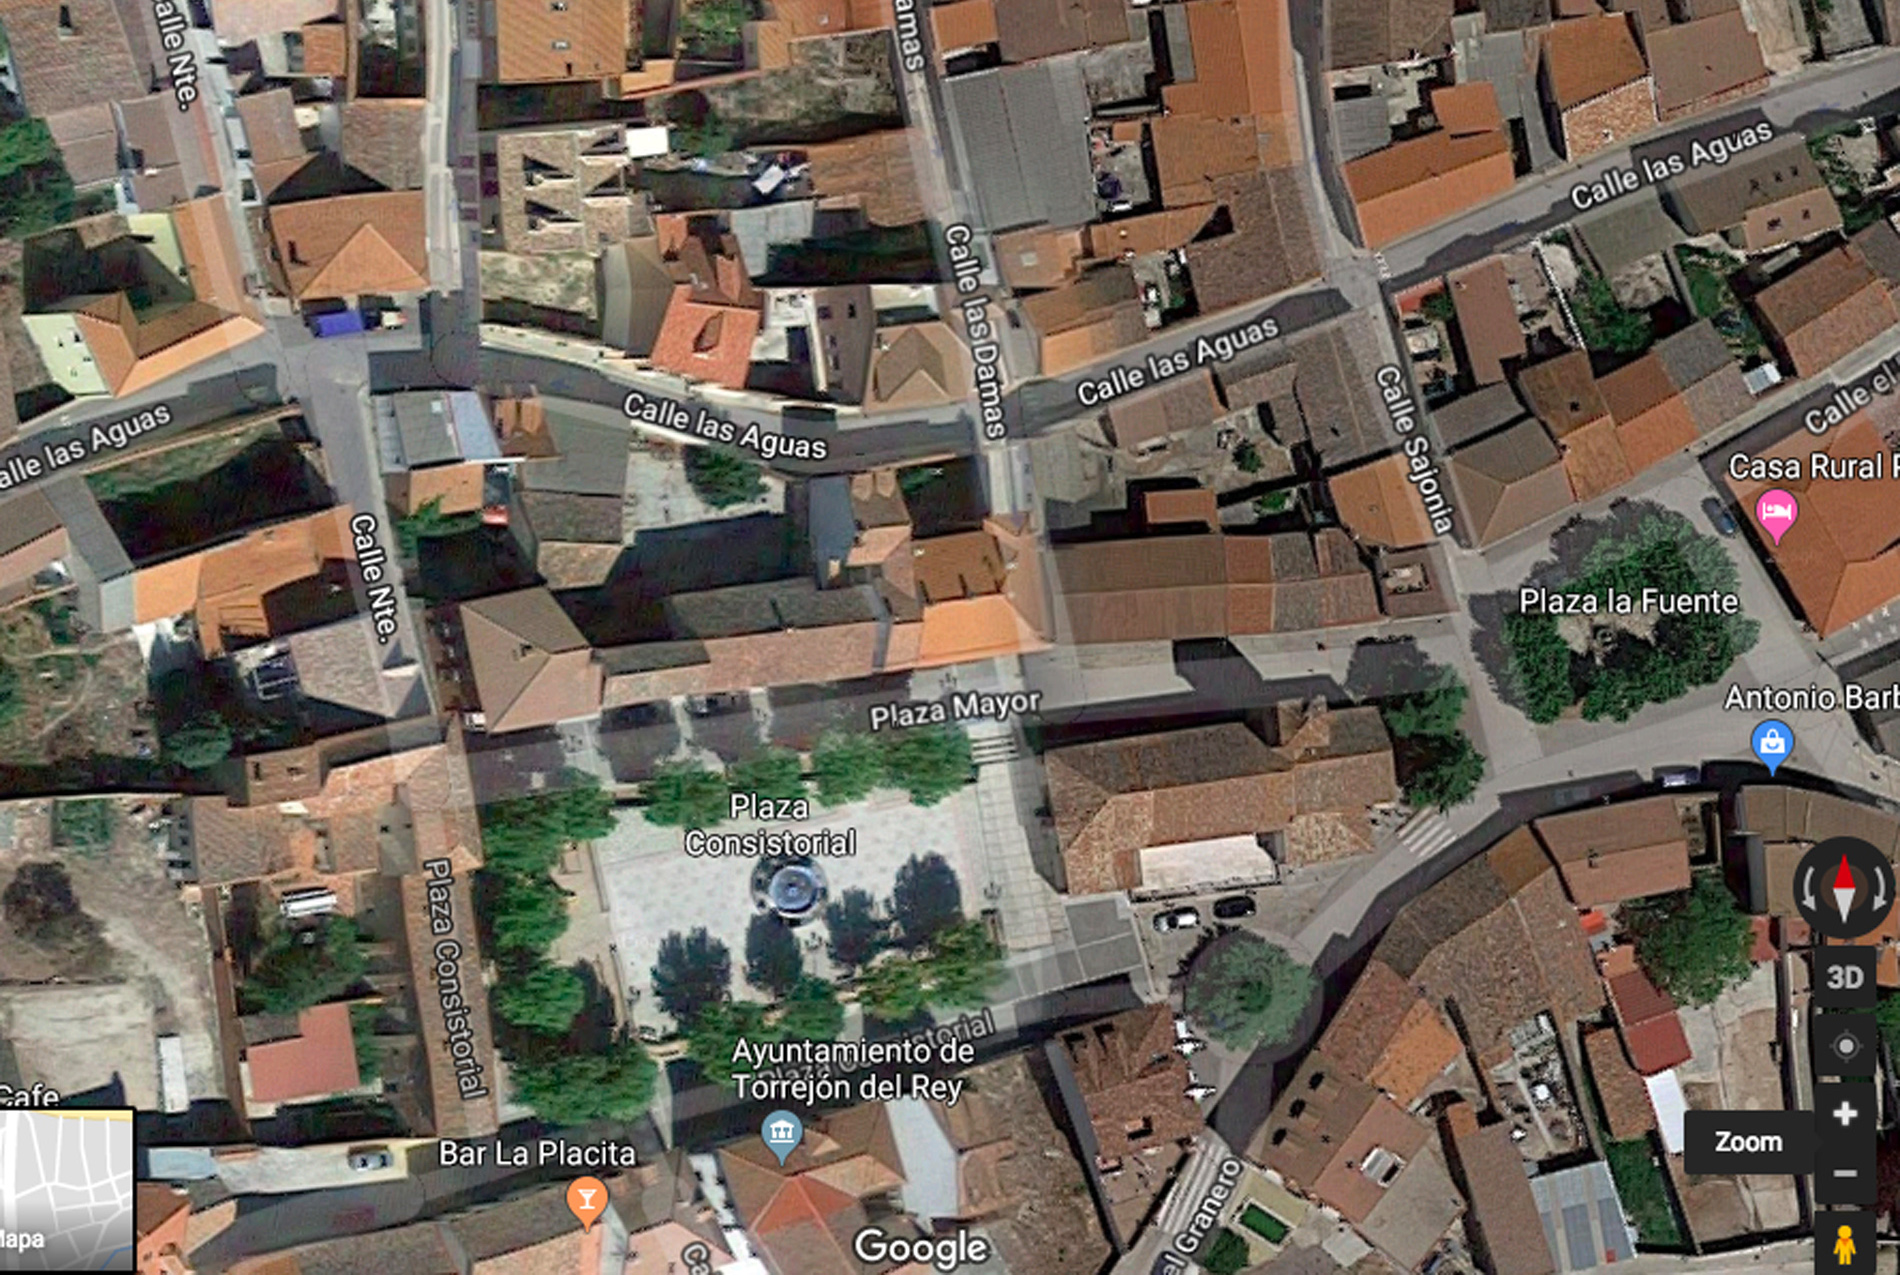 Vista en Google Maps de Torrejón del Rey.